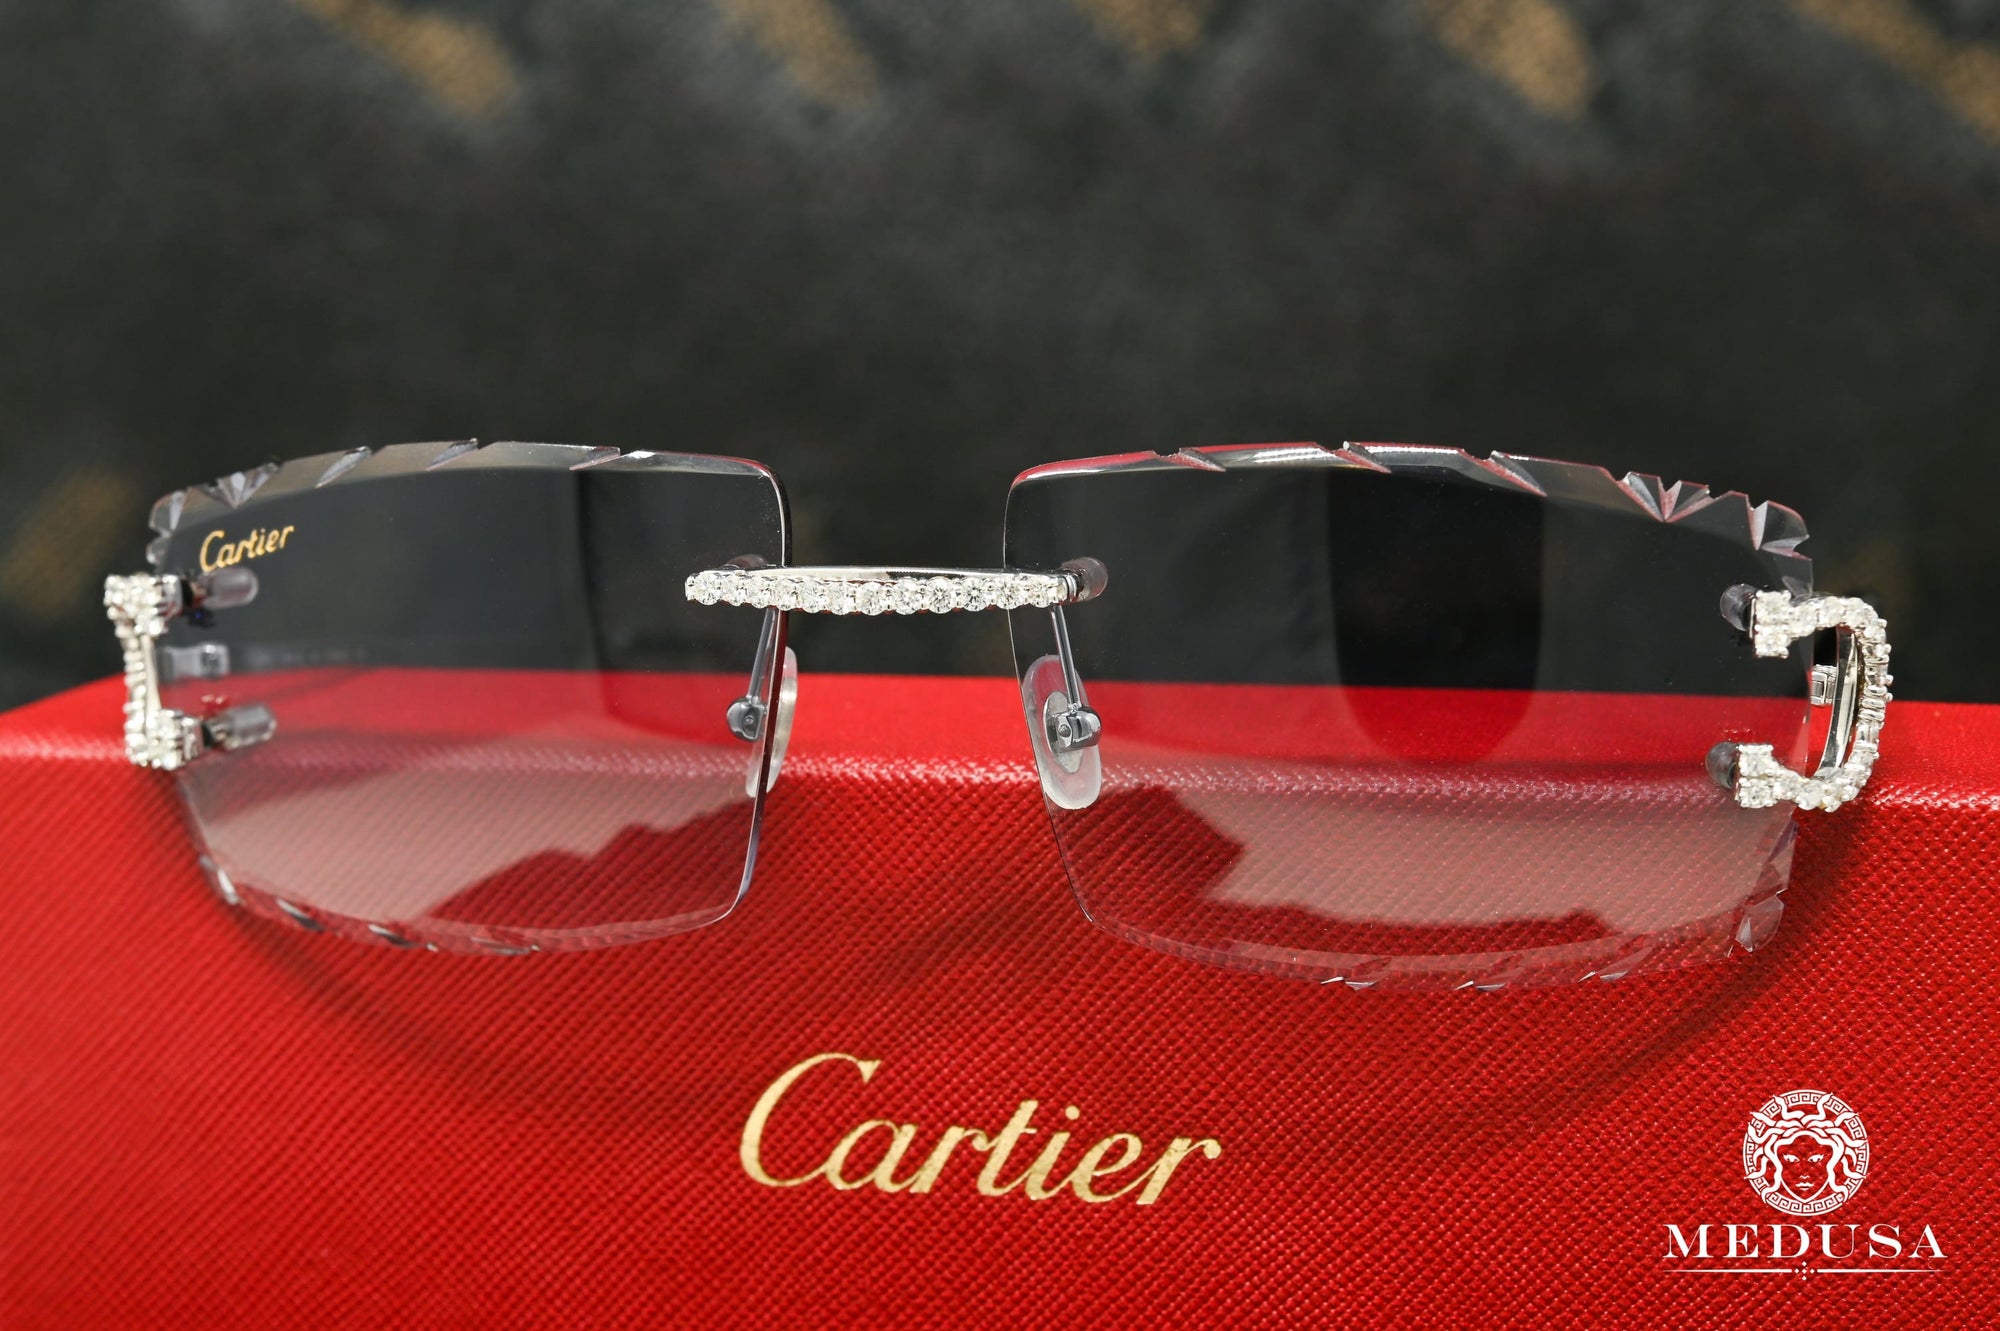 Lunette Cartier | Lunette Homme Cartier C | Silver & Black Diamond Cut Lenses Or Blanc